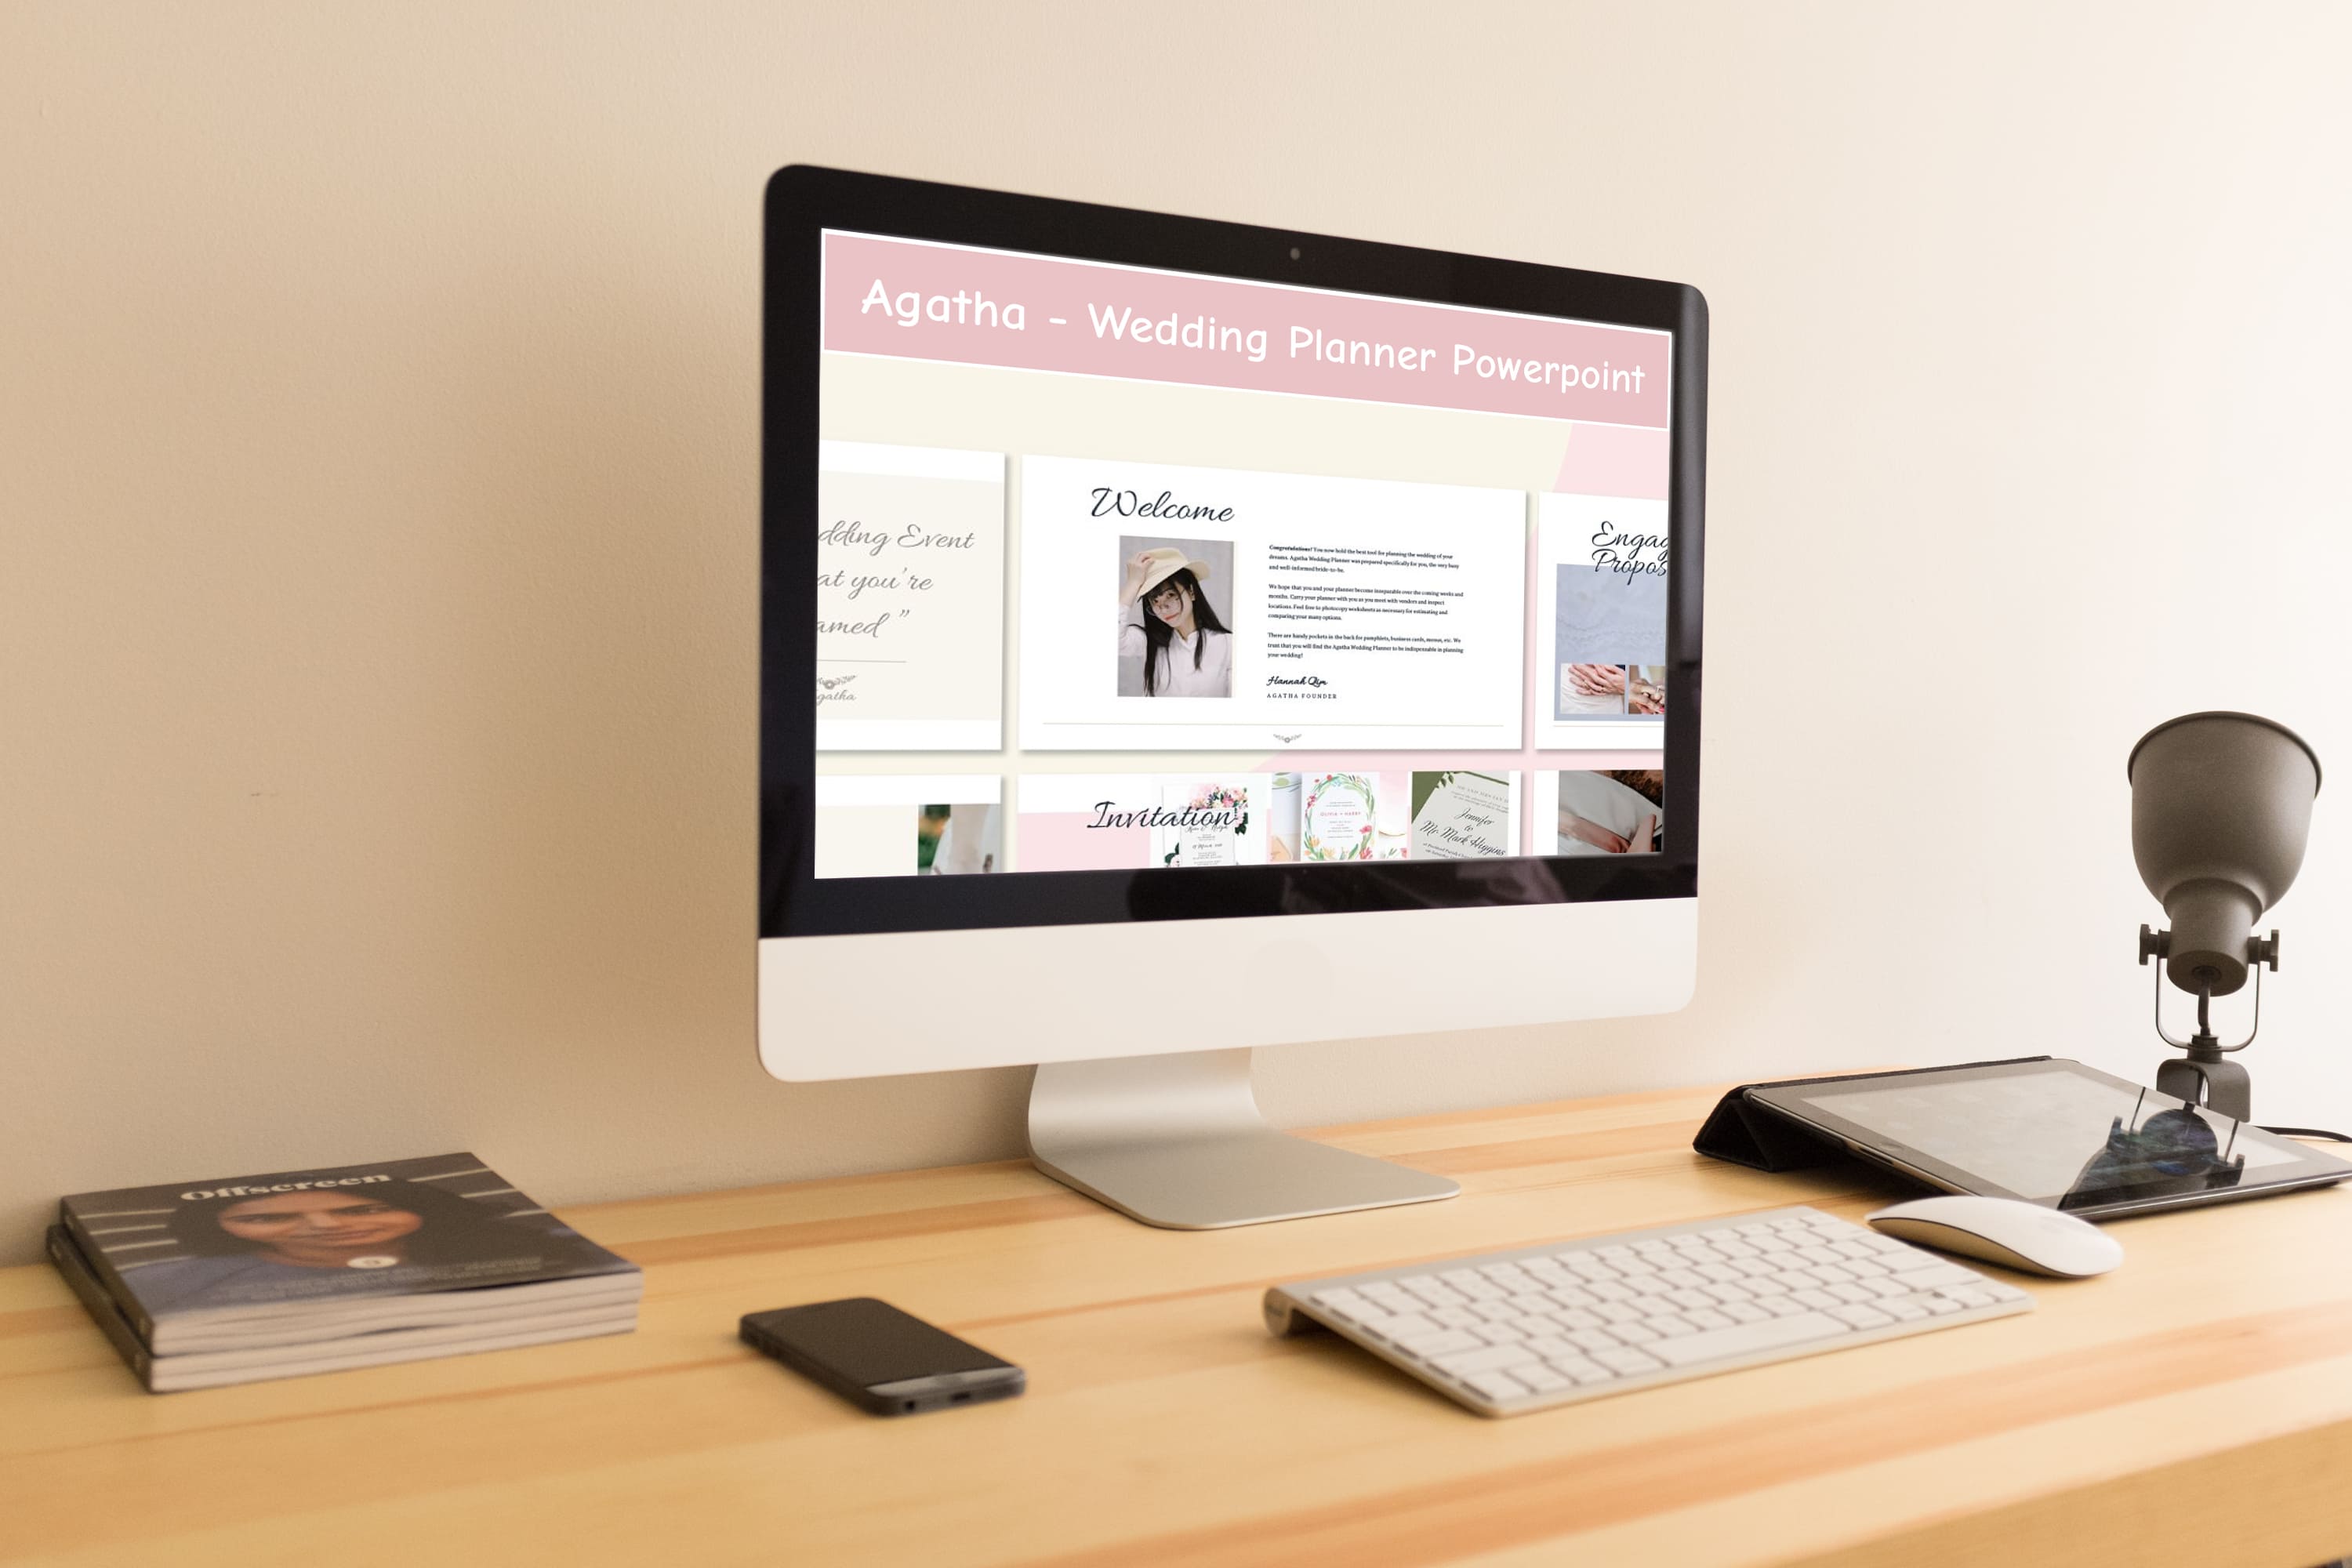 Agatha - Wedding Planner Powerpoint - desktop.